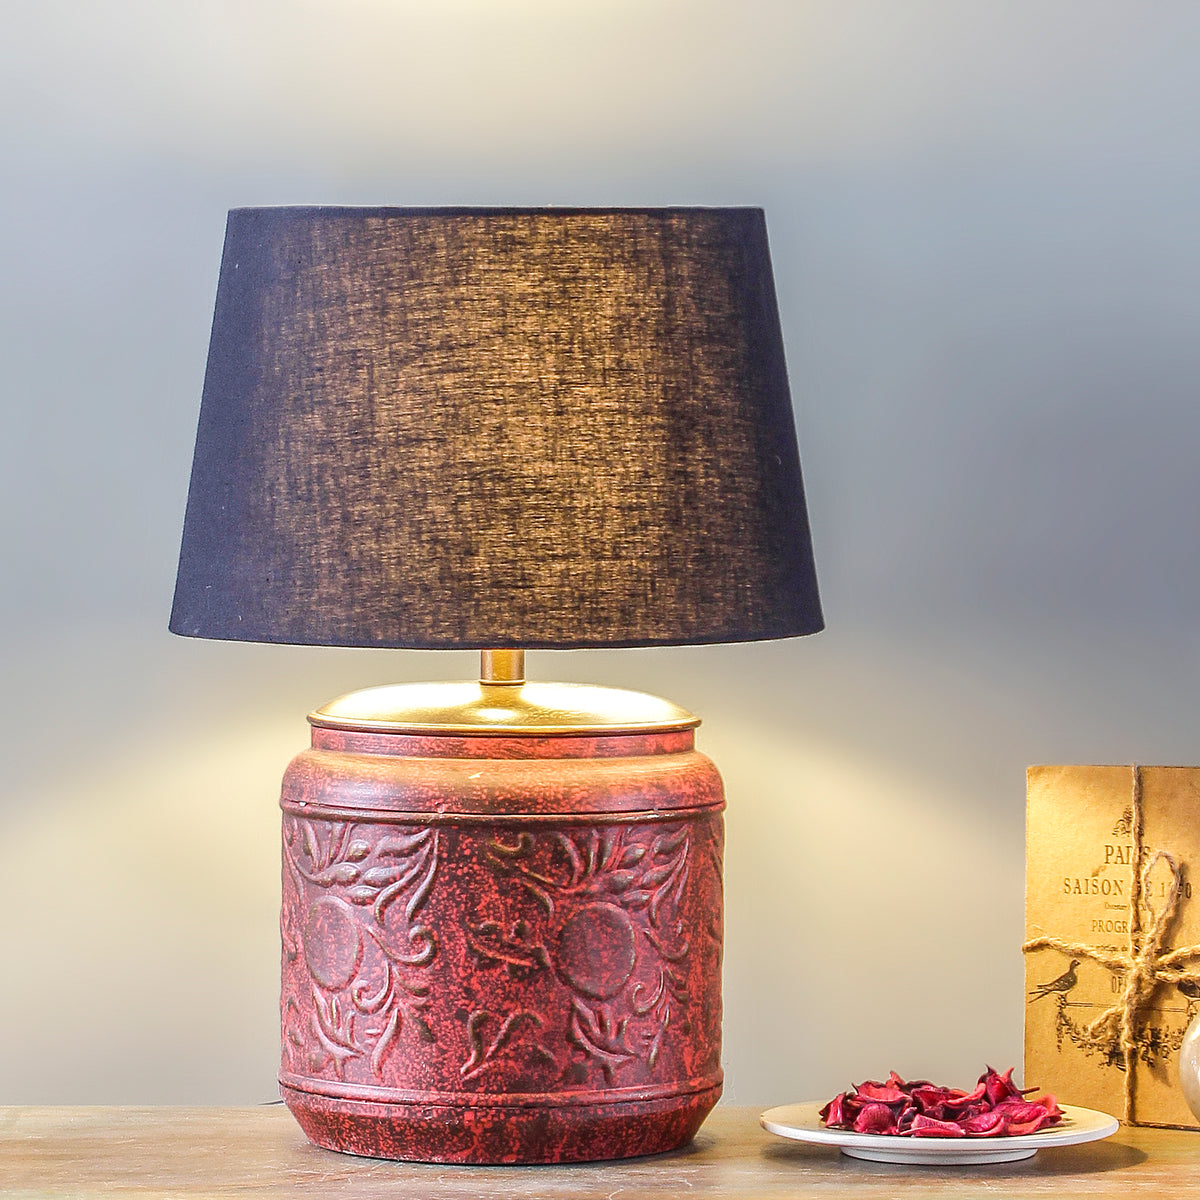 Buy Creote Vintage Red Table Lamp online